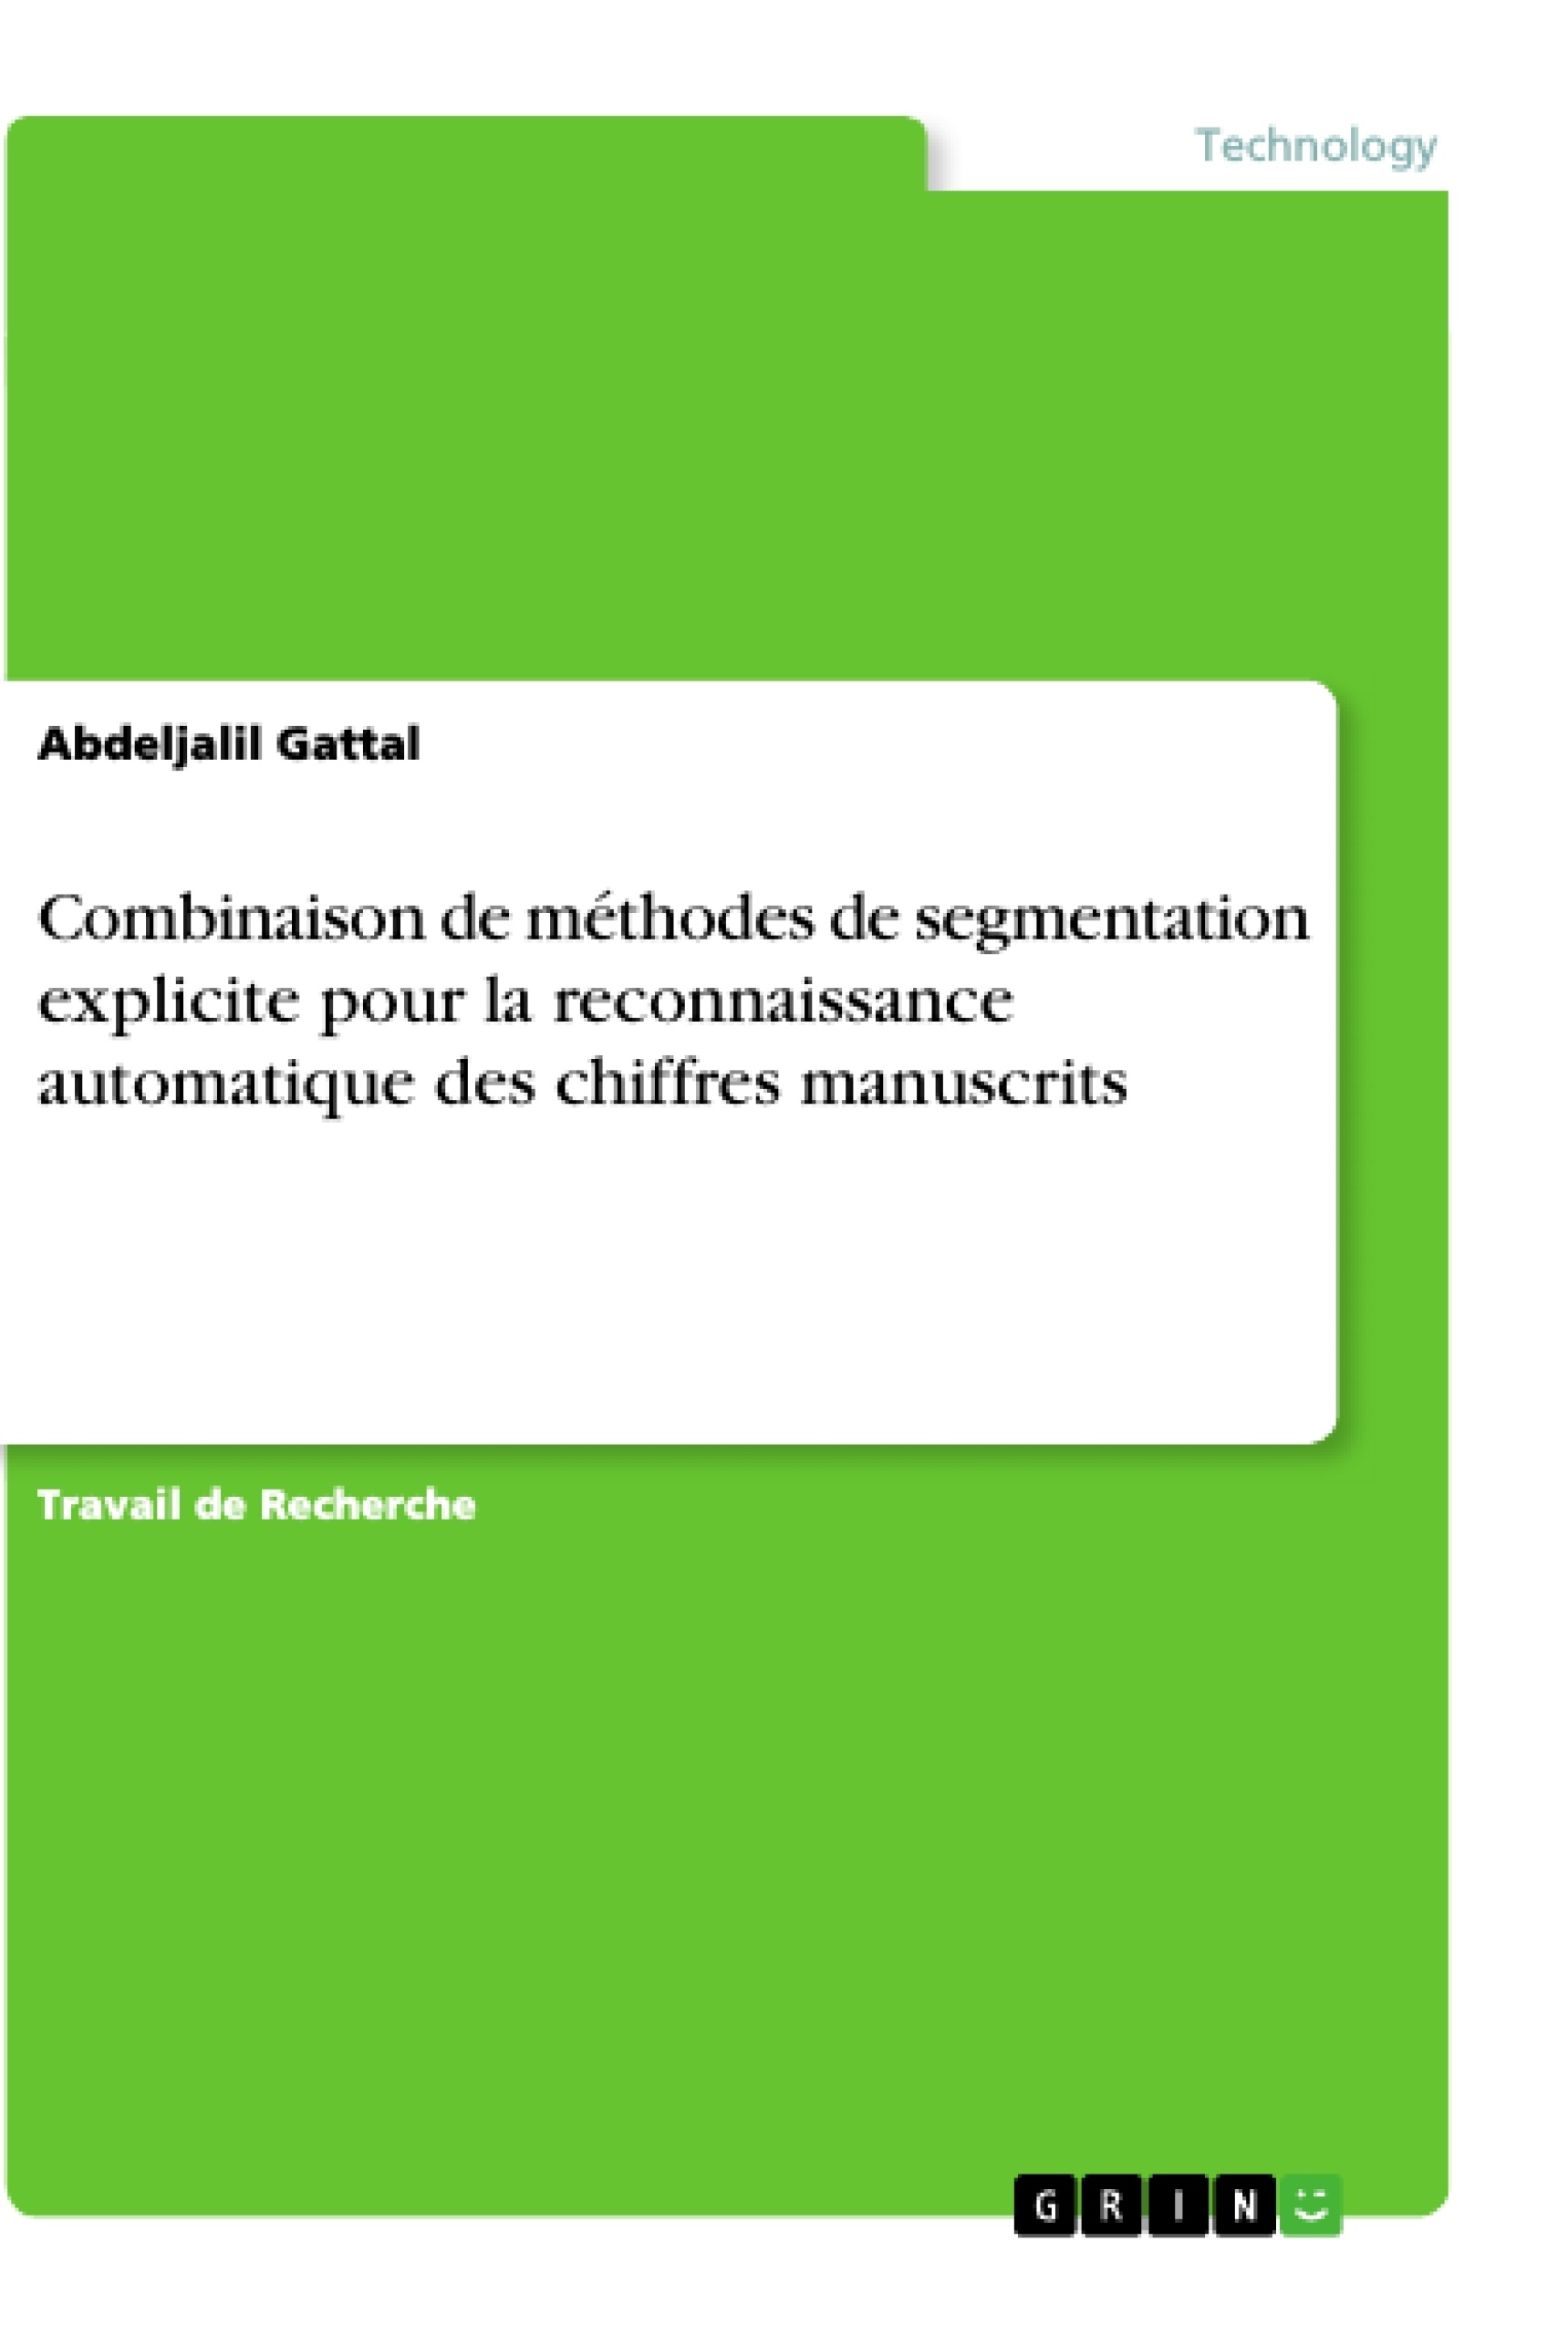 Título: Combinaison de méthodes de segmentation explicite pour la reconnaissance automatique des chiffres manuscrits